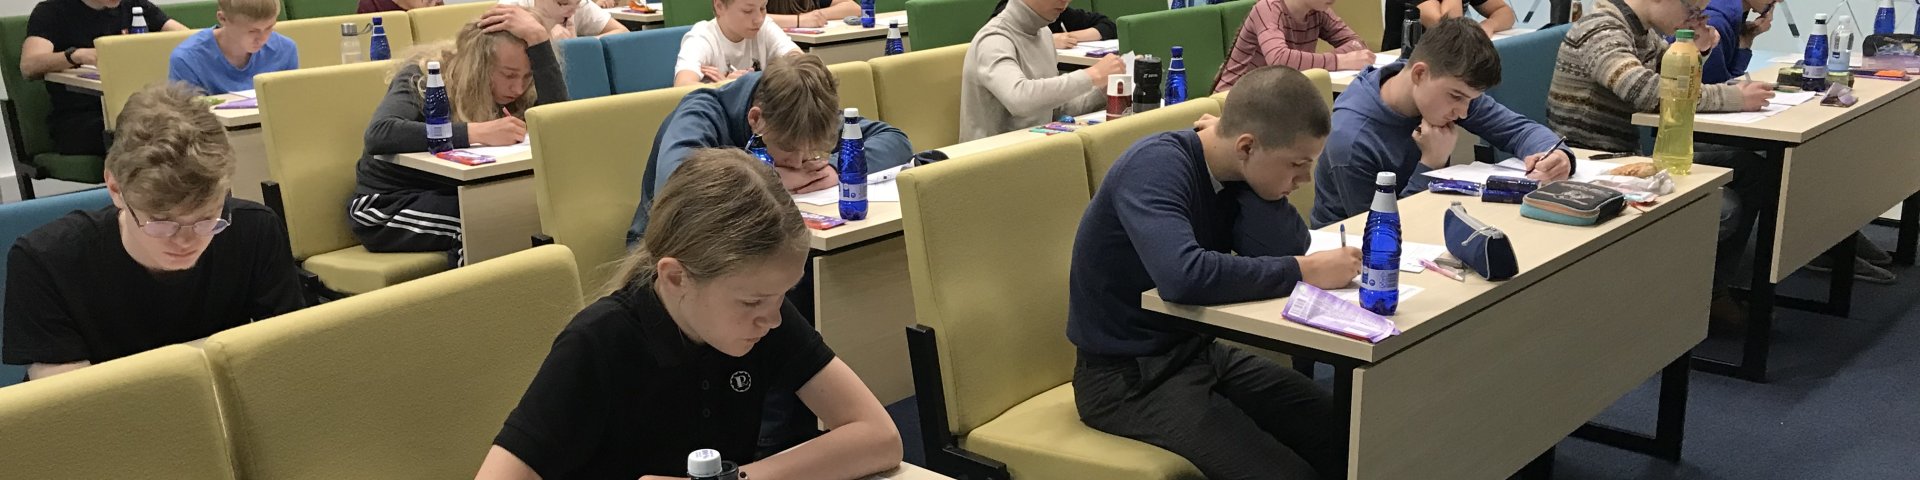 Eesti matemaatikaolümpiaadi 2023. aasta lõppvoor 7.–8. klassile. Õpilased ülesandeid lahendamas.